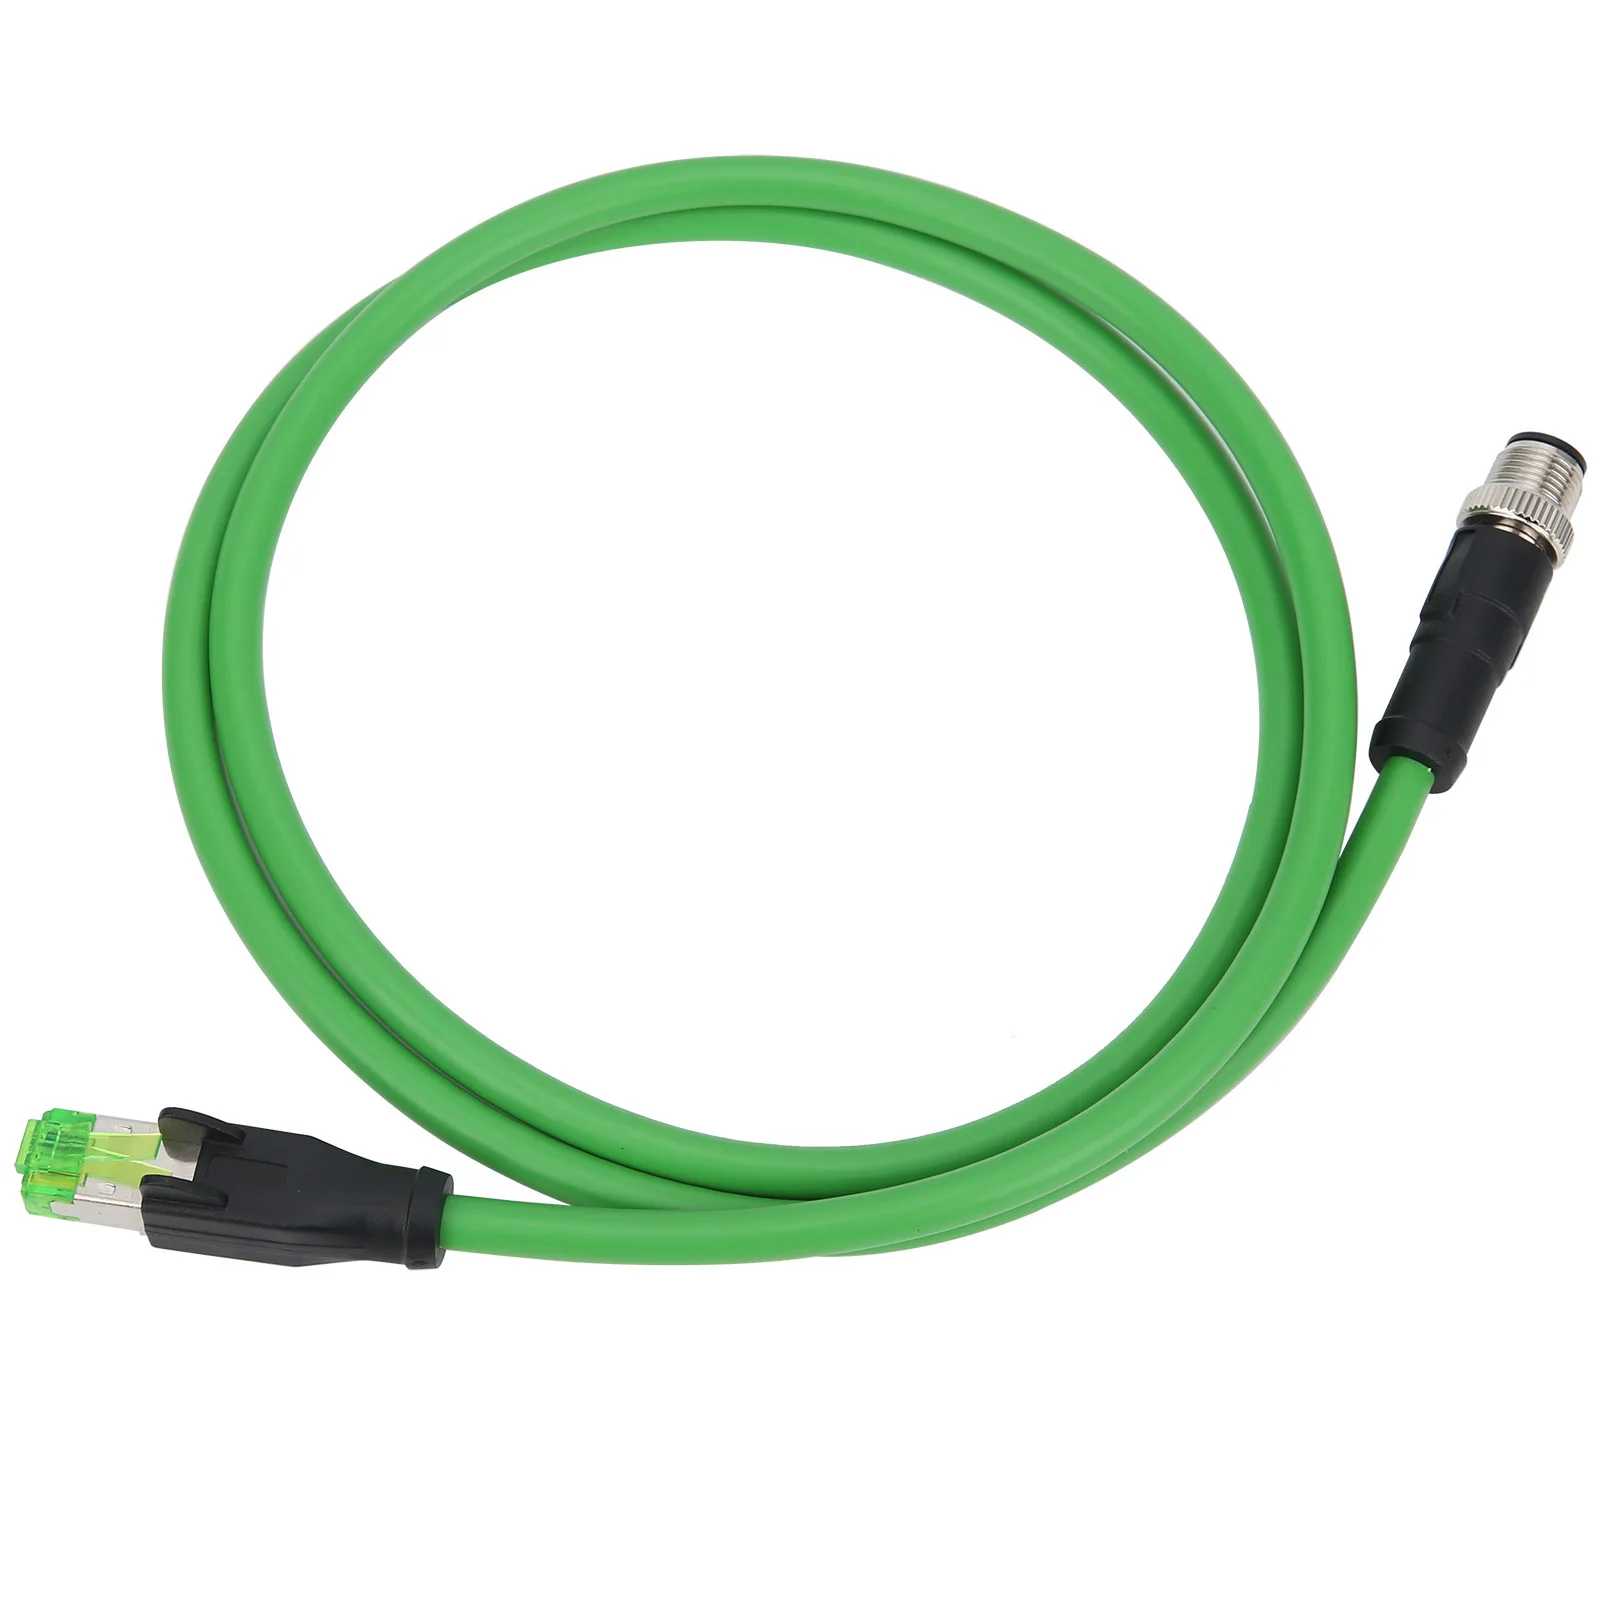 

Соединительный шнур M12 к RJ45, 4-контактный сетевой кабель, кабель связи для промышленных приложений Ethernet, водонепроницаемость IP67